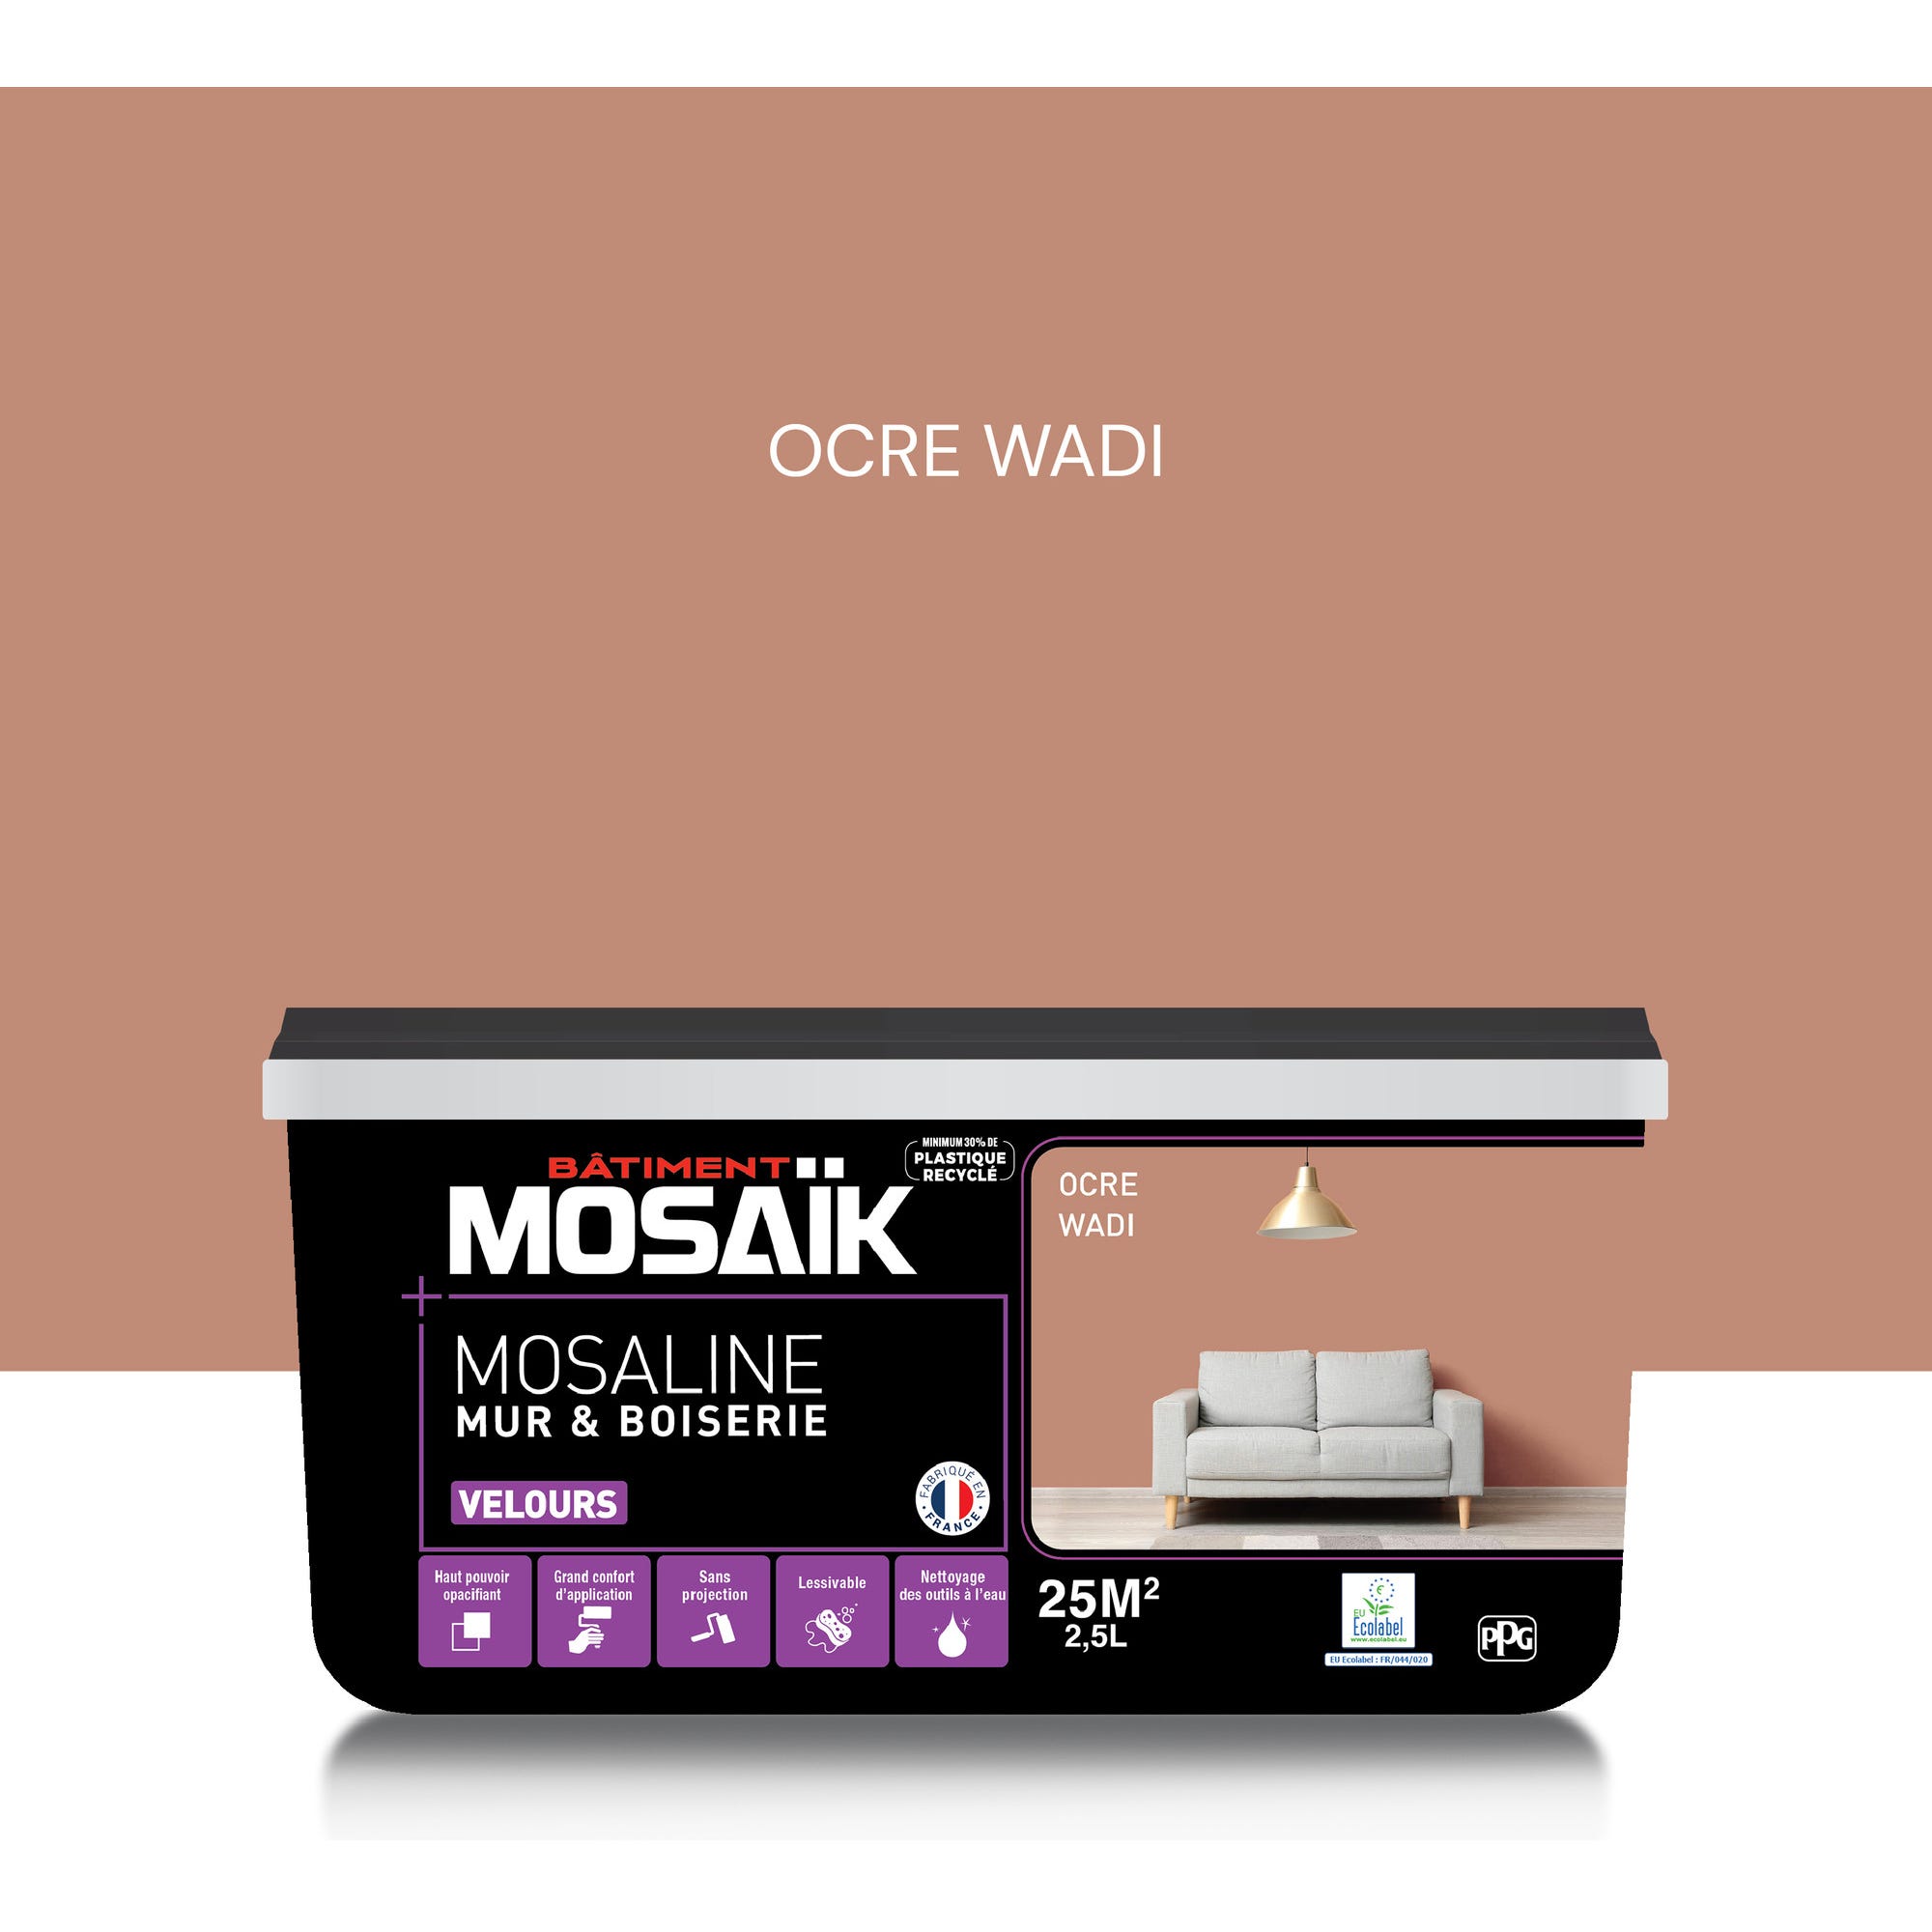 Peinture intérieure multi support acrylique velours ocre wadi 2,5 L Mosaline - MOSAIK 0